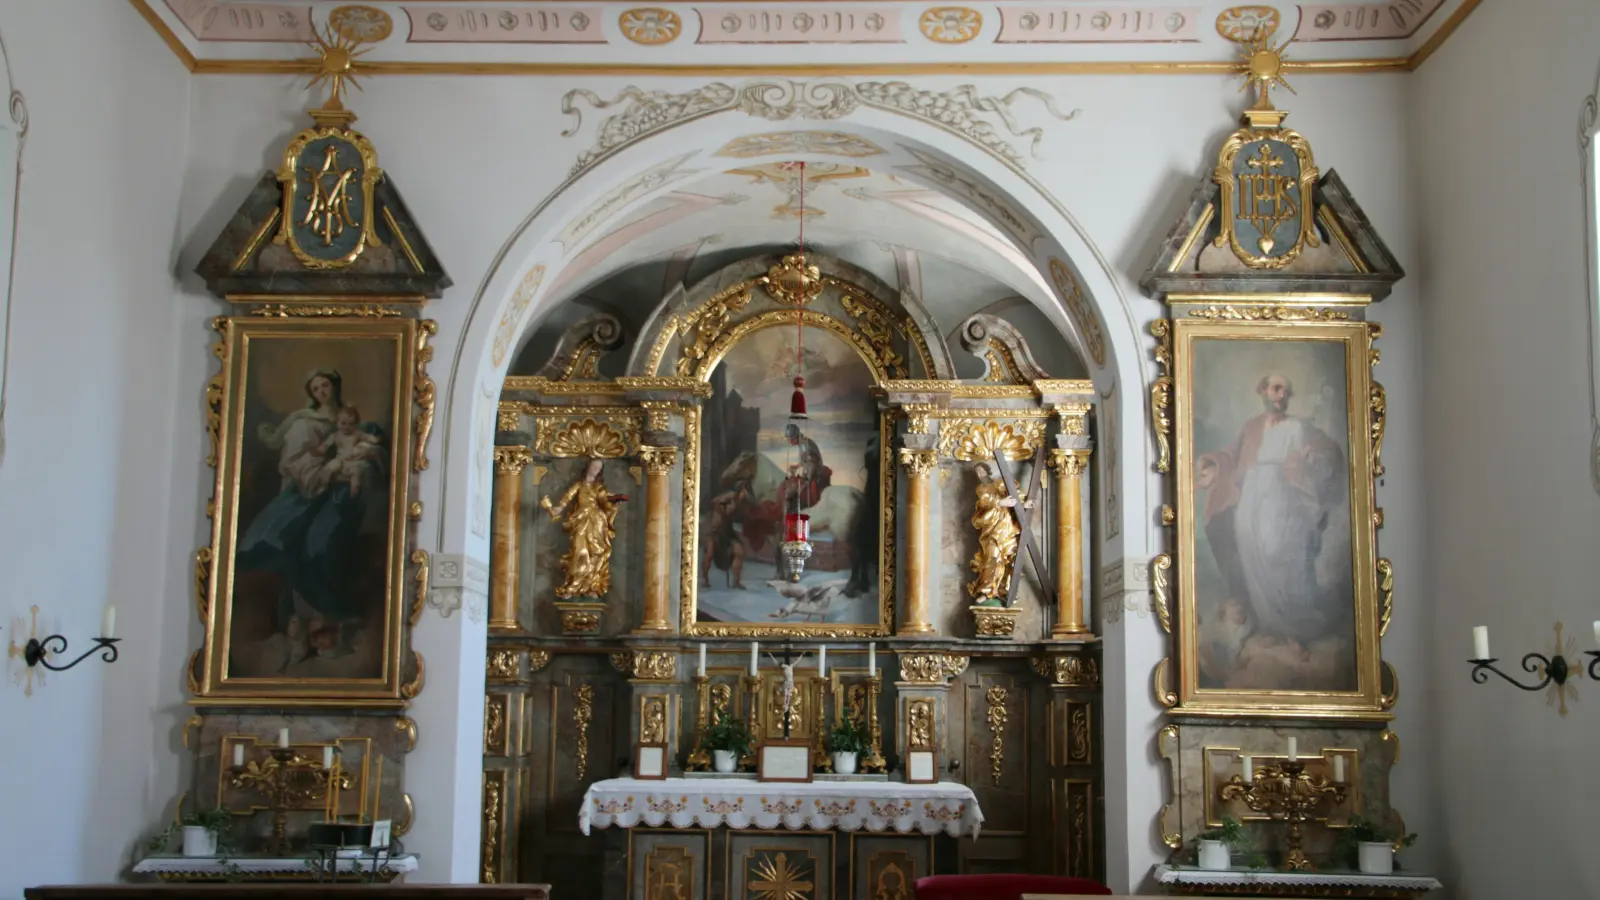 Sankt Martin ist die Kirche von Untermauerbach geweiht. Die Weiheurkunde reicht bis ins Jahr 1738 zurück. Neben dem Hochaltar sind besonders die orginellen Kirchenstuhlschilder für den Besucher einen Blick wert. Foto: Erich Hoffmann  (Foto: Erich Hoffmann)